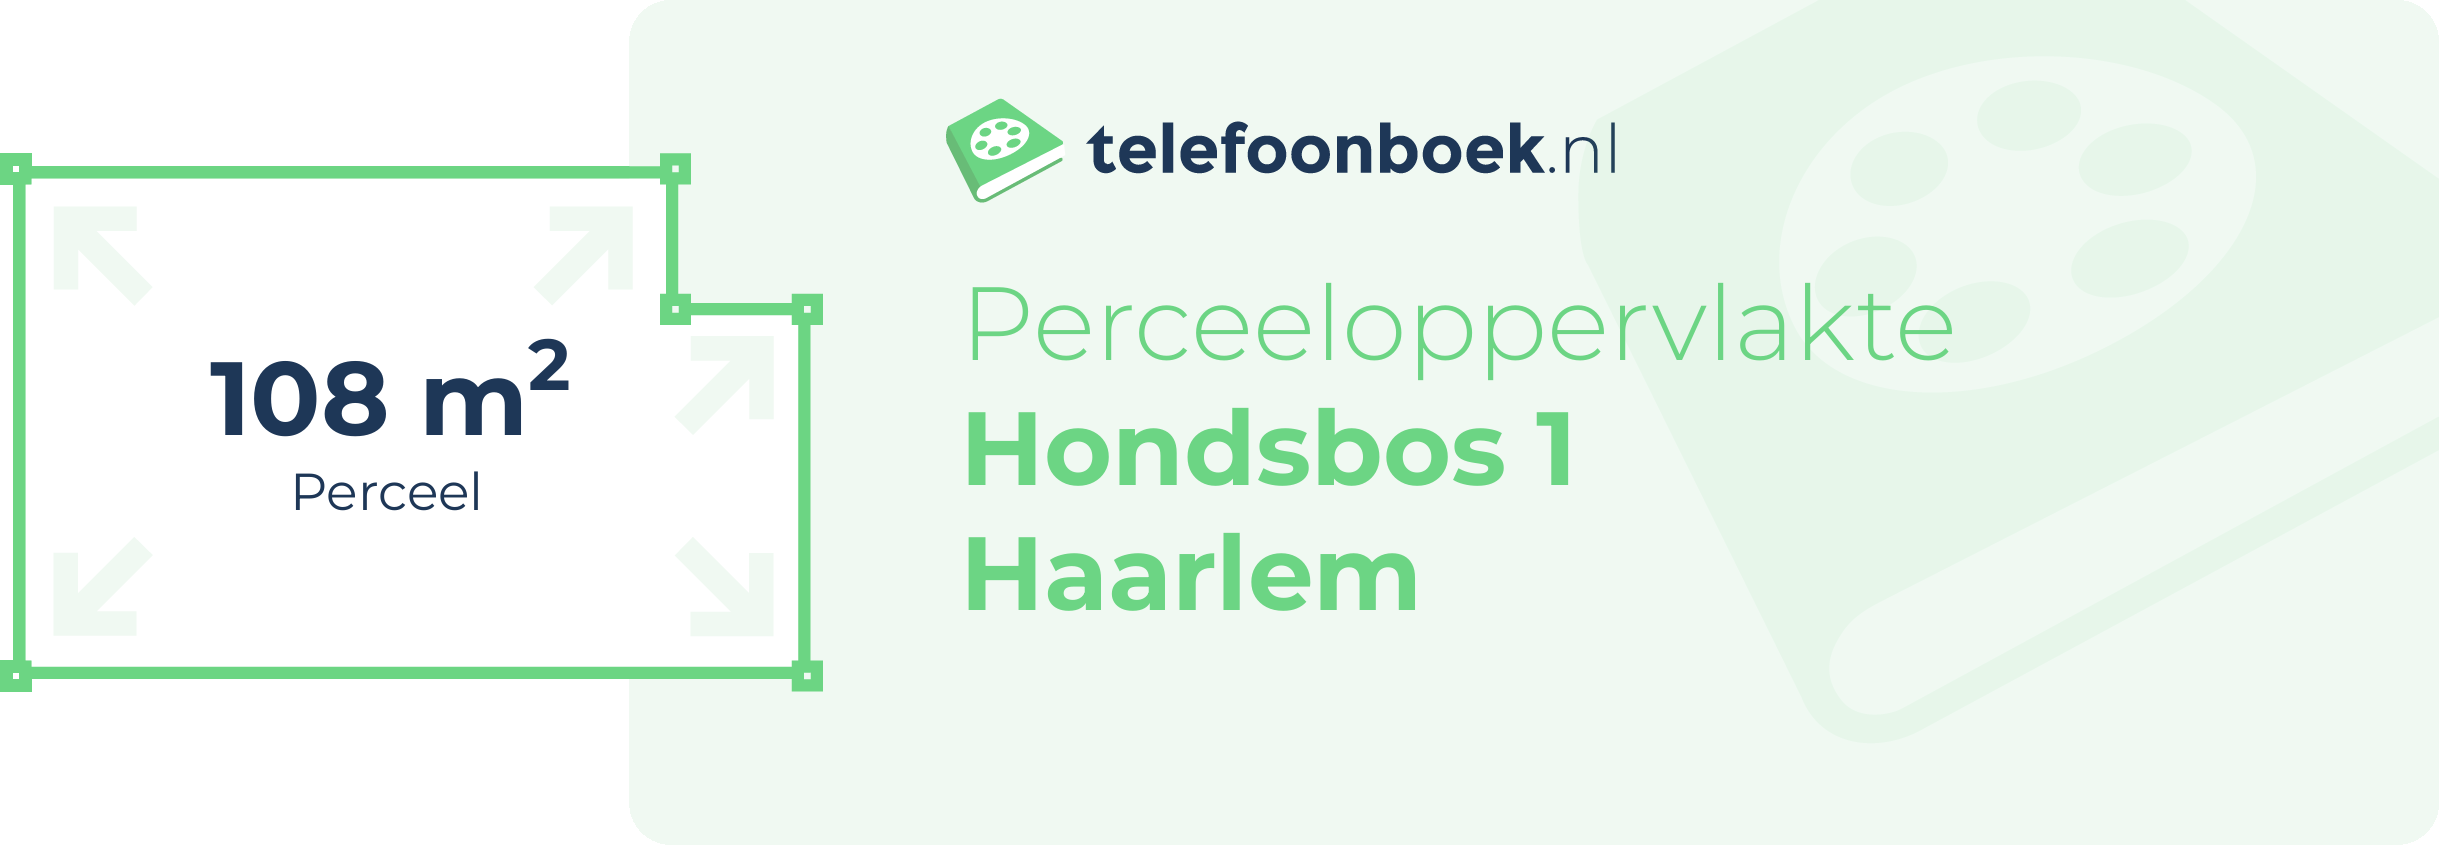 Perceeloppervlakte Hondsbos 1 Haarlem